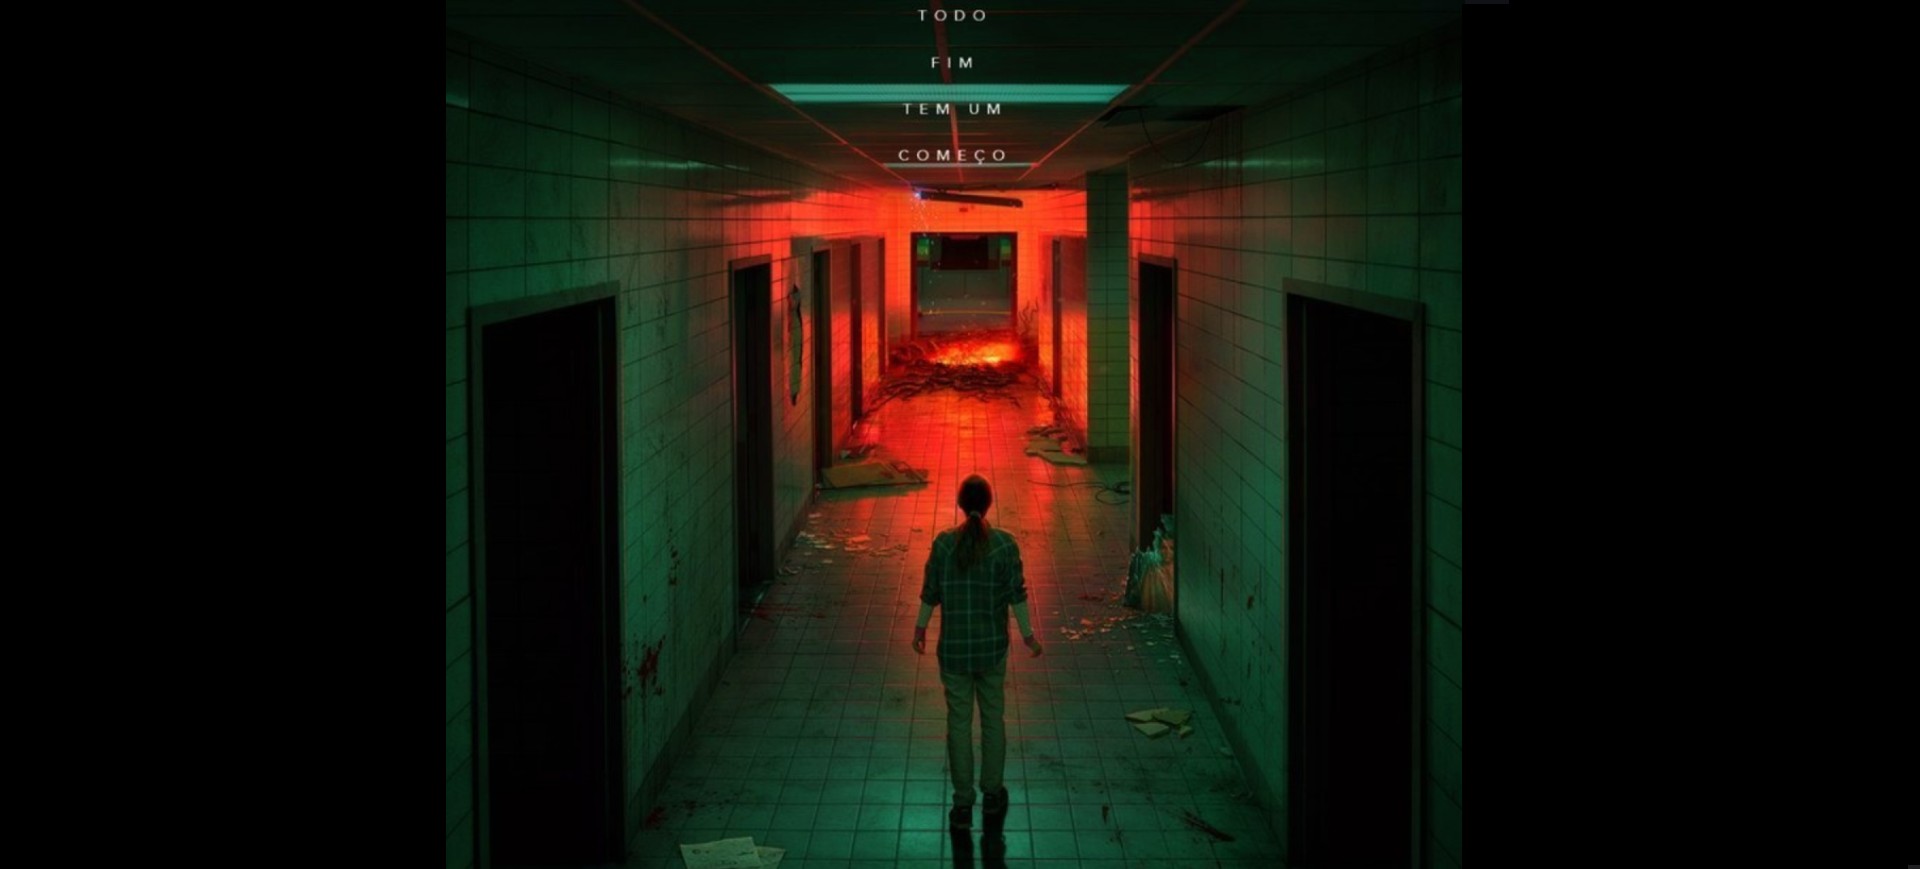 Imagem mostra a personagem de Sadie Sink, Max, em Stranger Things, em um porter da temporada 4 da série: ela está em um corredor escuro e, ao fundo, dá para ver uma iluminação vermelha e algo parecido com uma lava saindo do chão. No topo, o texto "todo fim tem um começo"